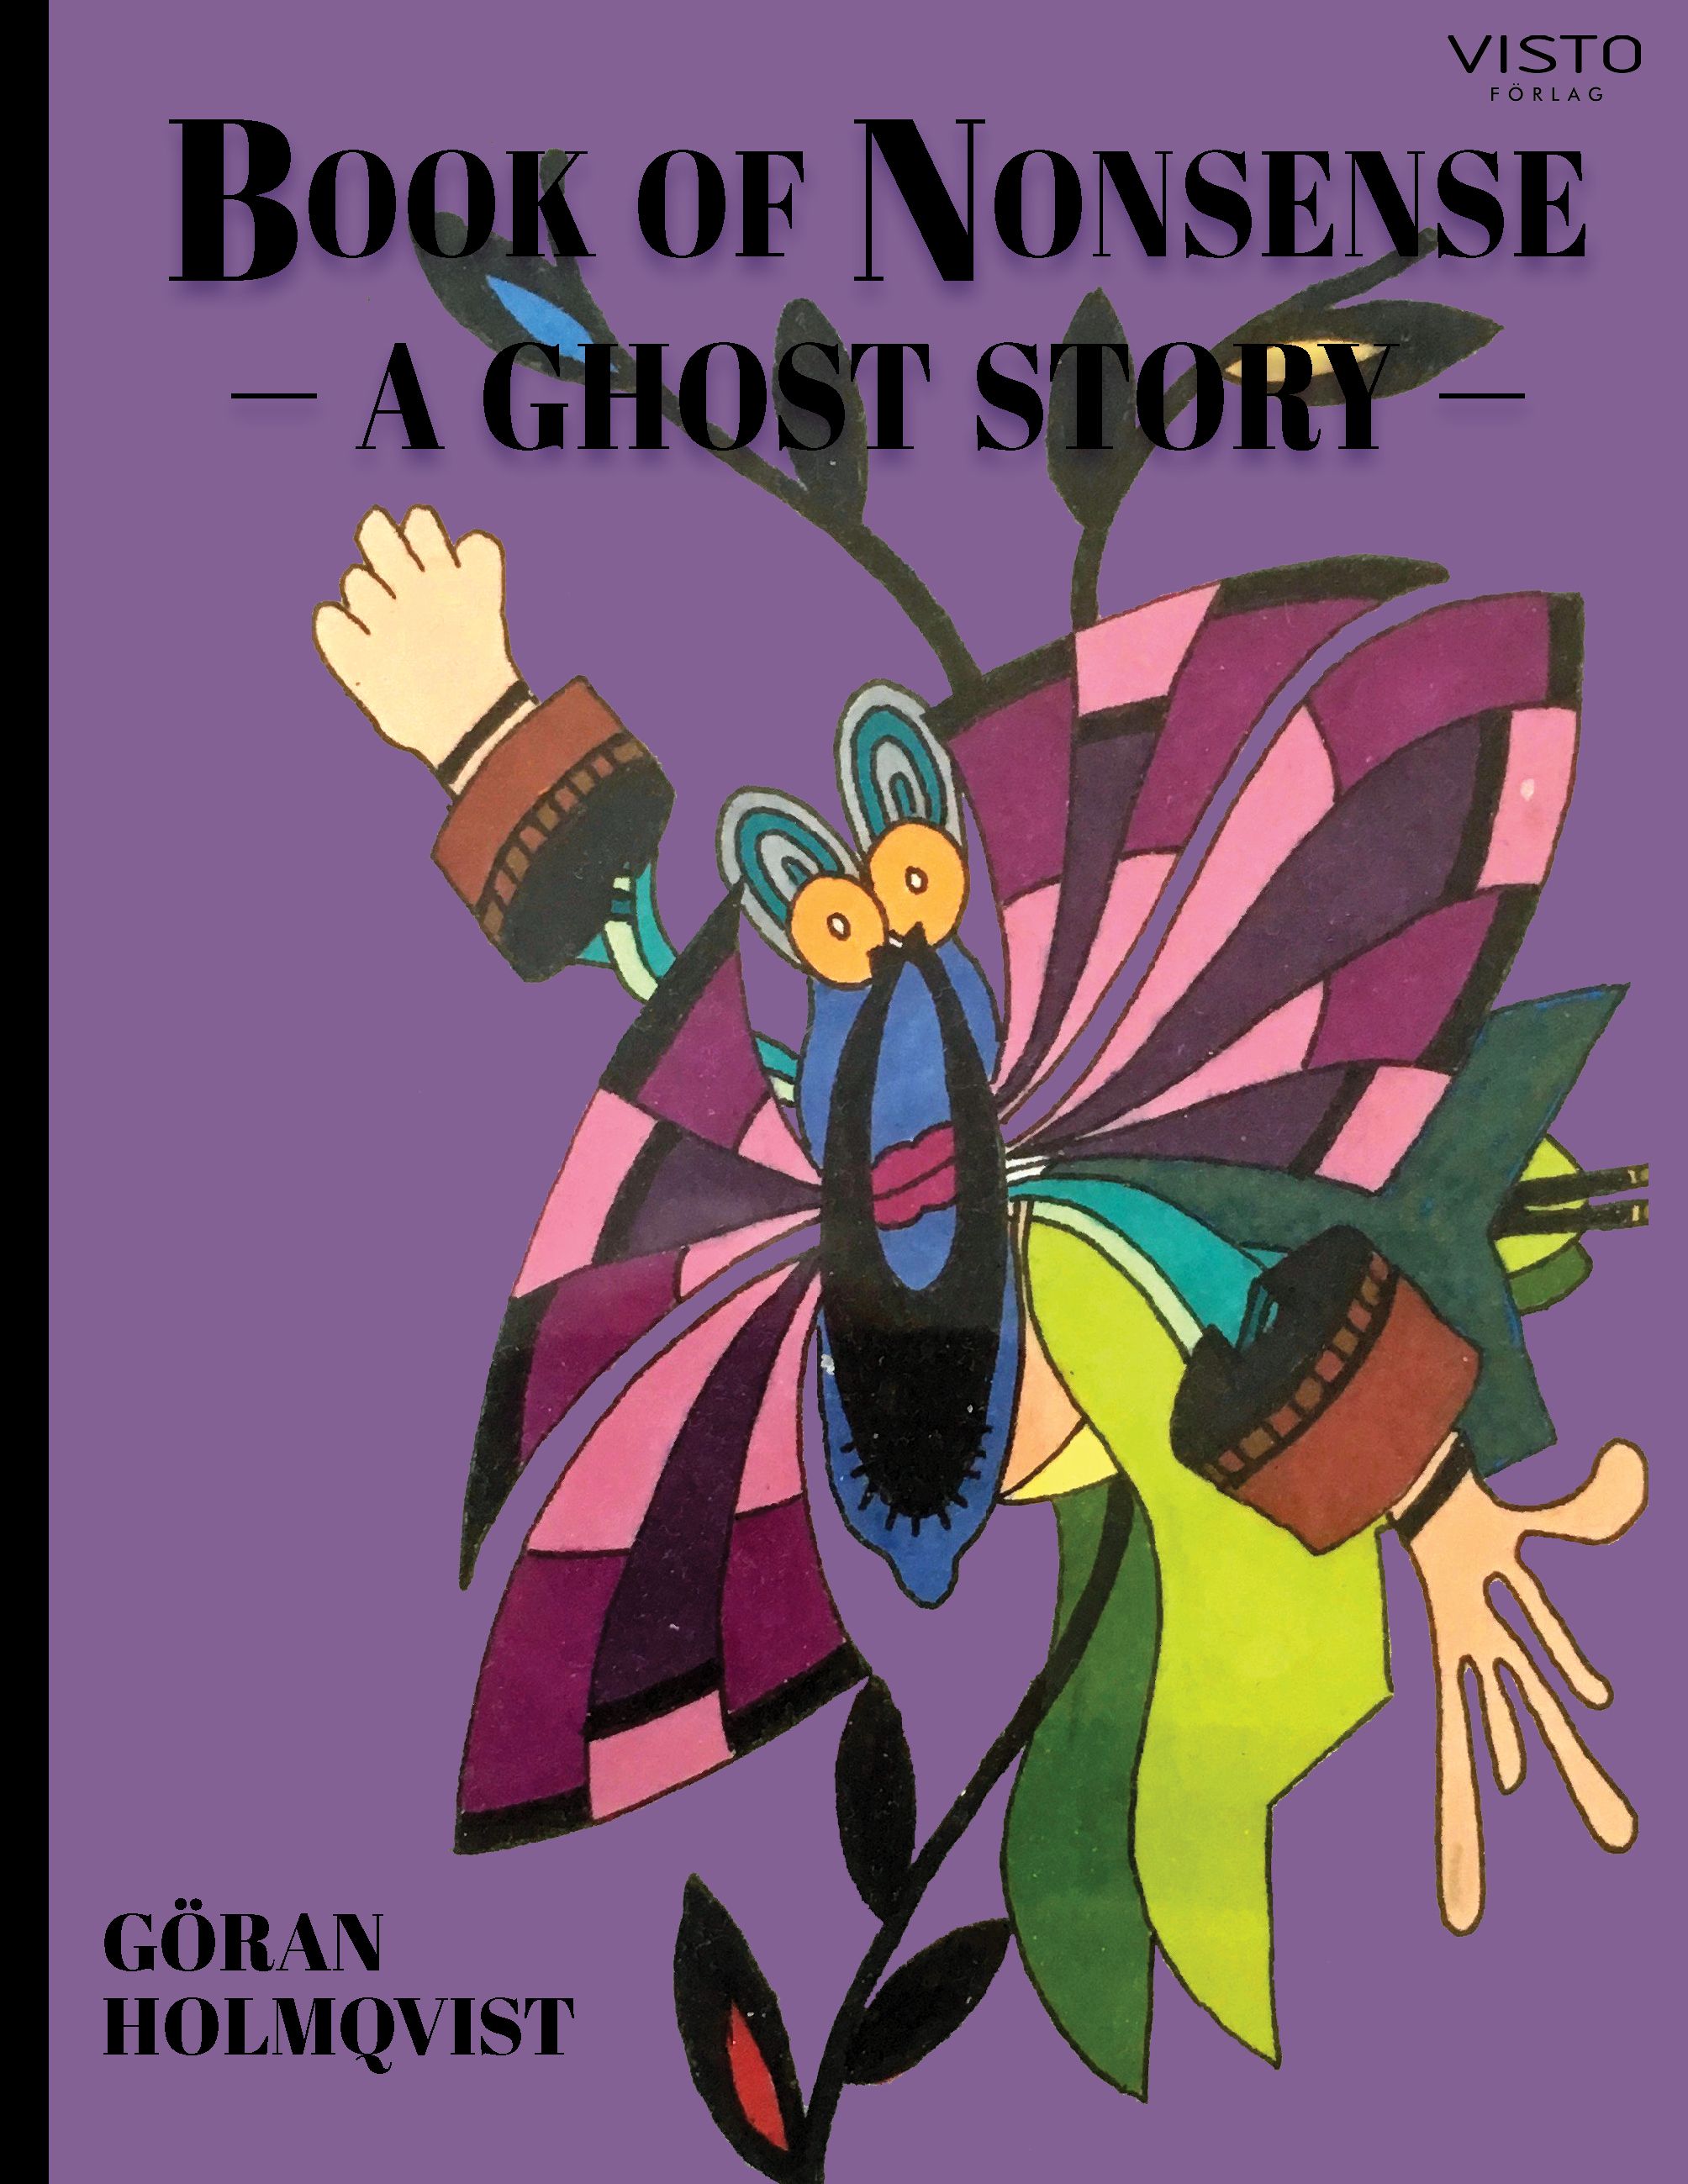 Book of Nonsense - a ghost story, e-bog af Göran Holmqvist